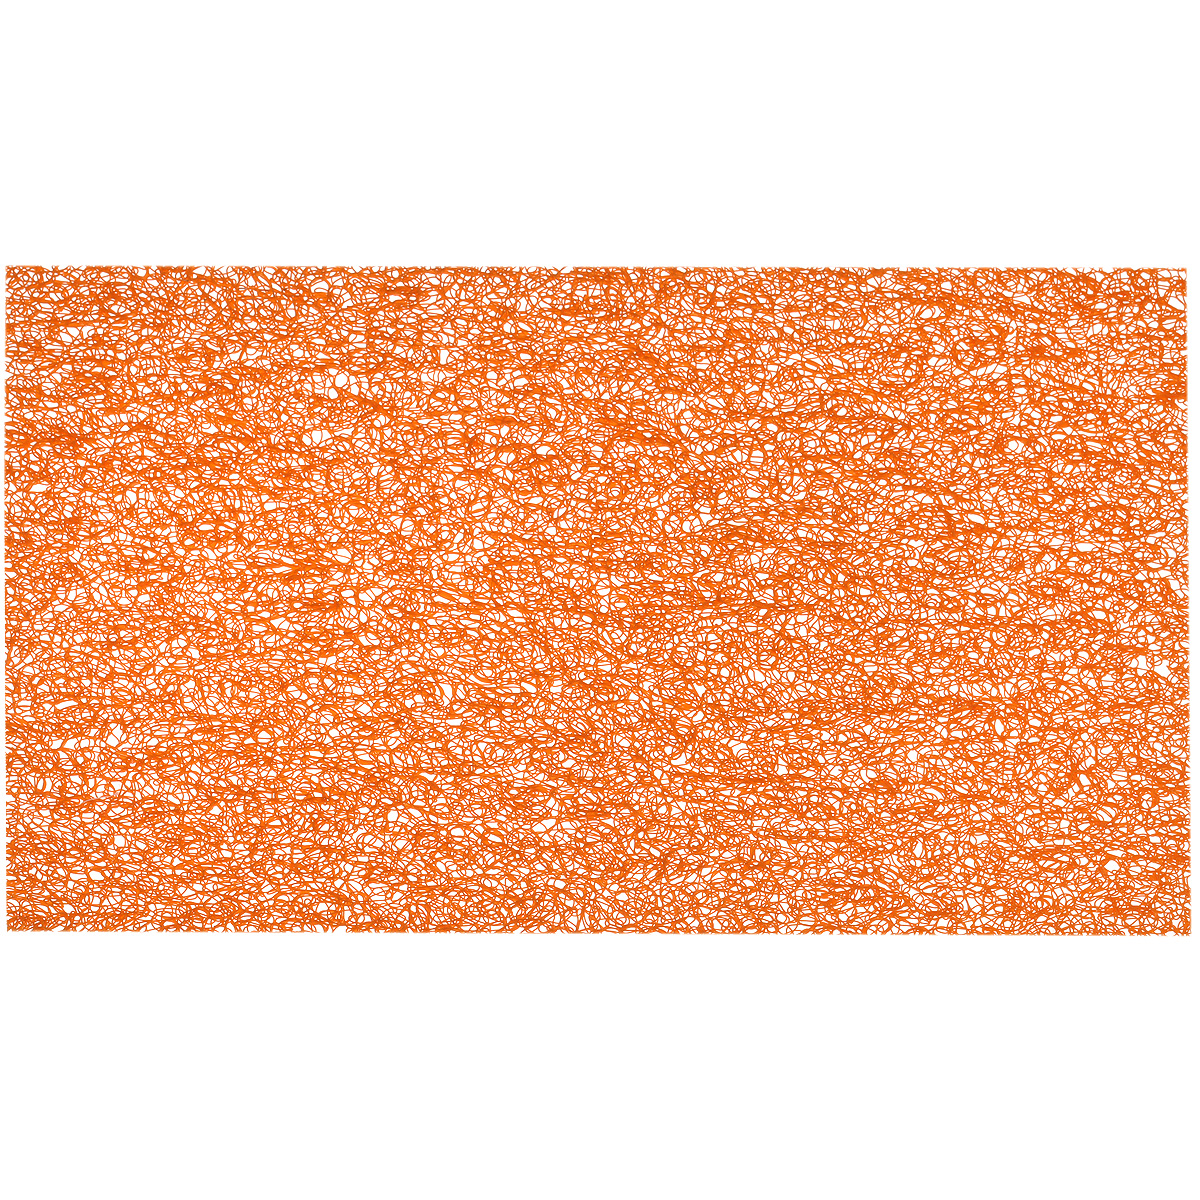 фото Подставка под горячее "Hans & Gretchen", цвет: оранжевый, 45 х 30 см. 28HZ-9024